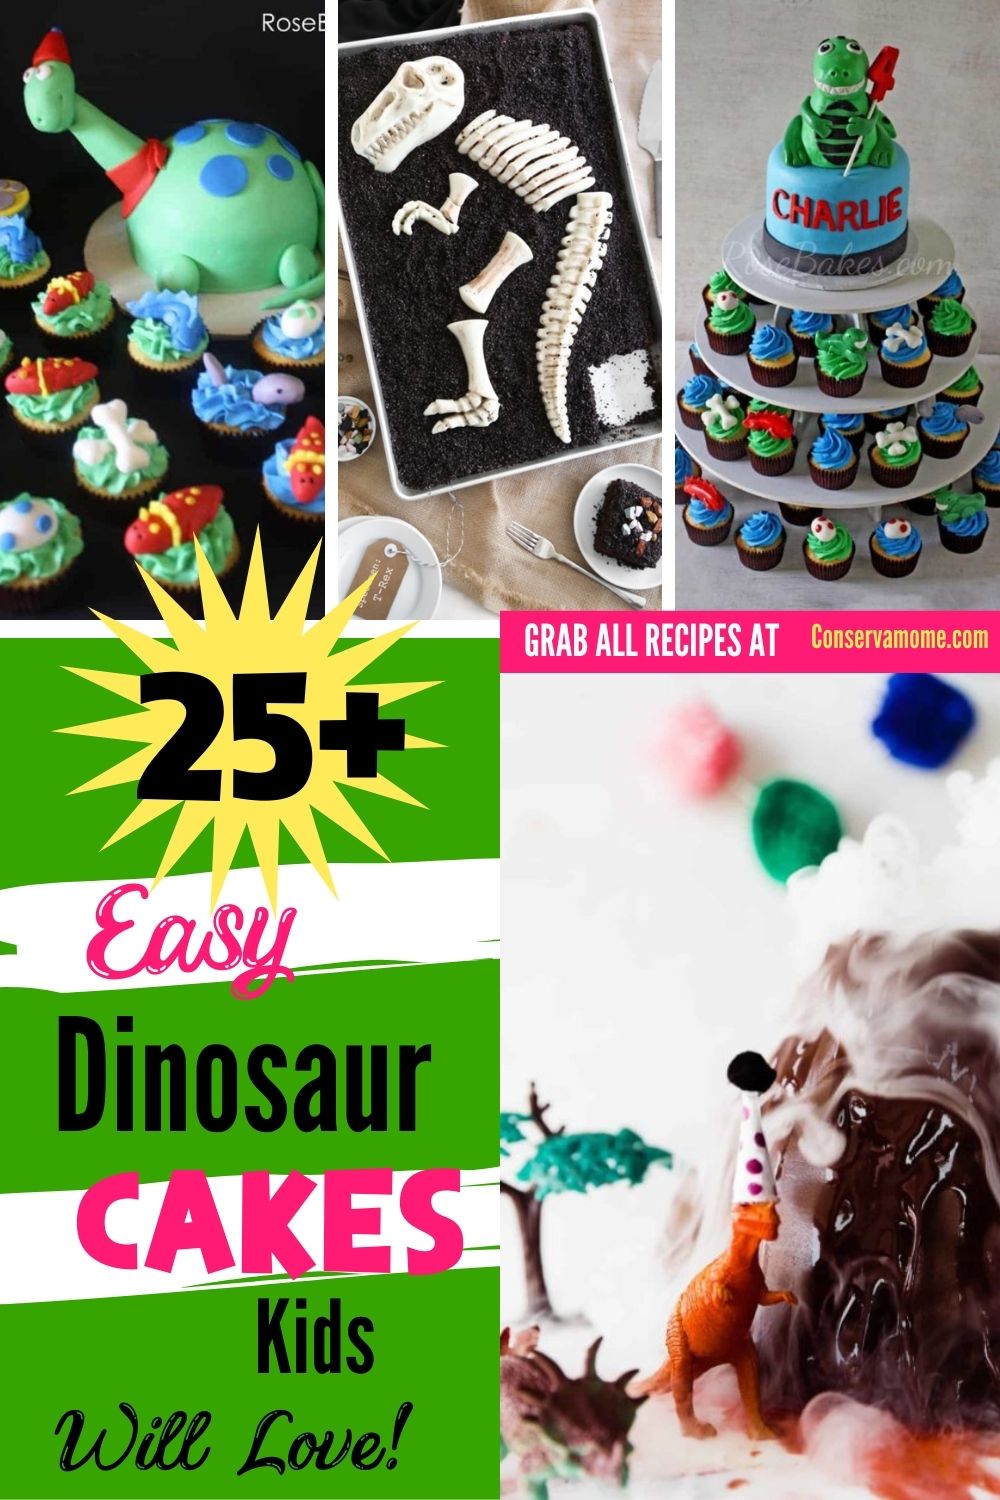 Easy Dinosaur Cakes kids will love